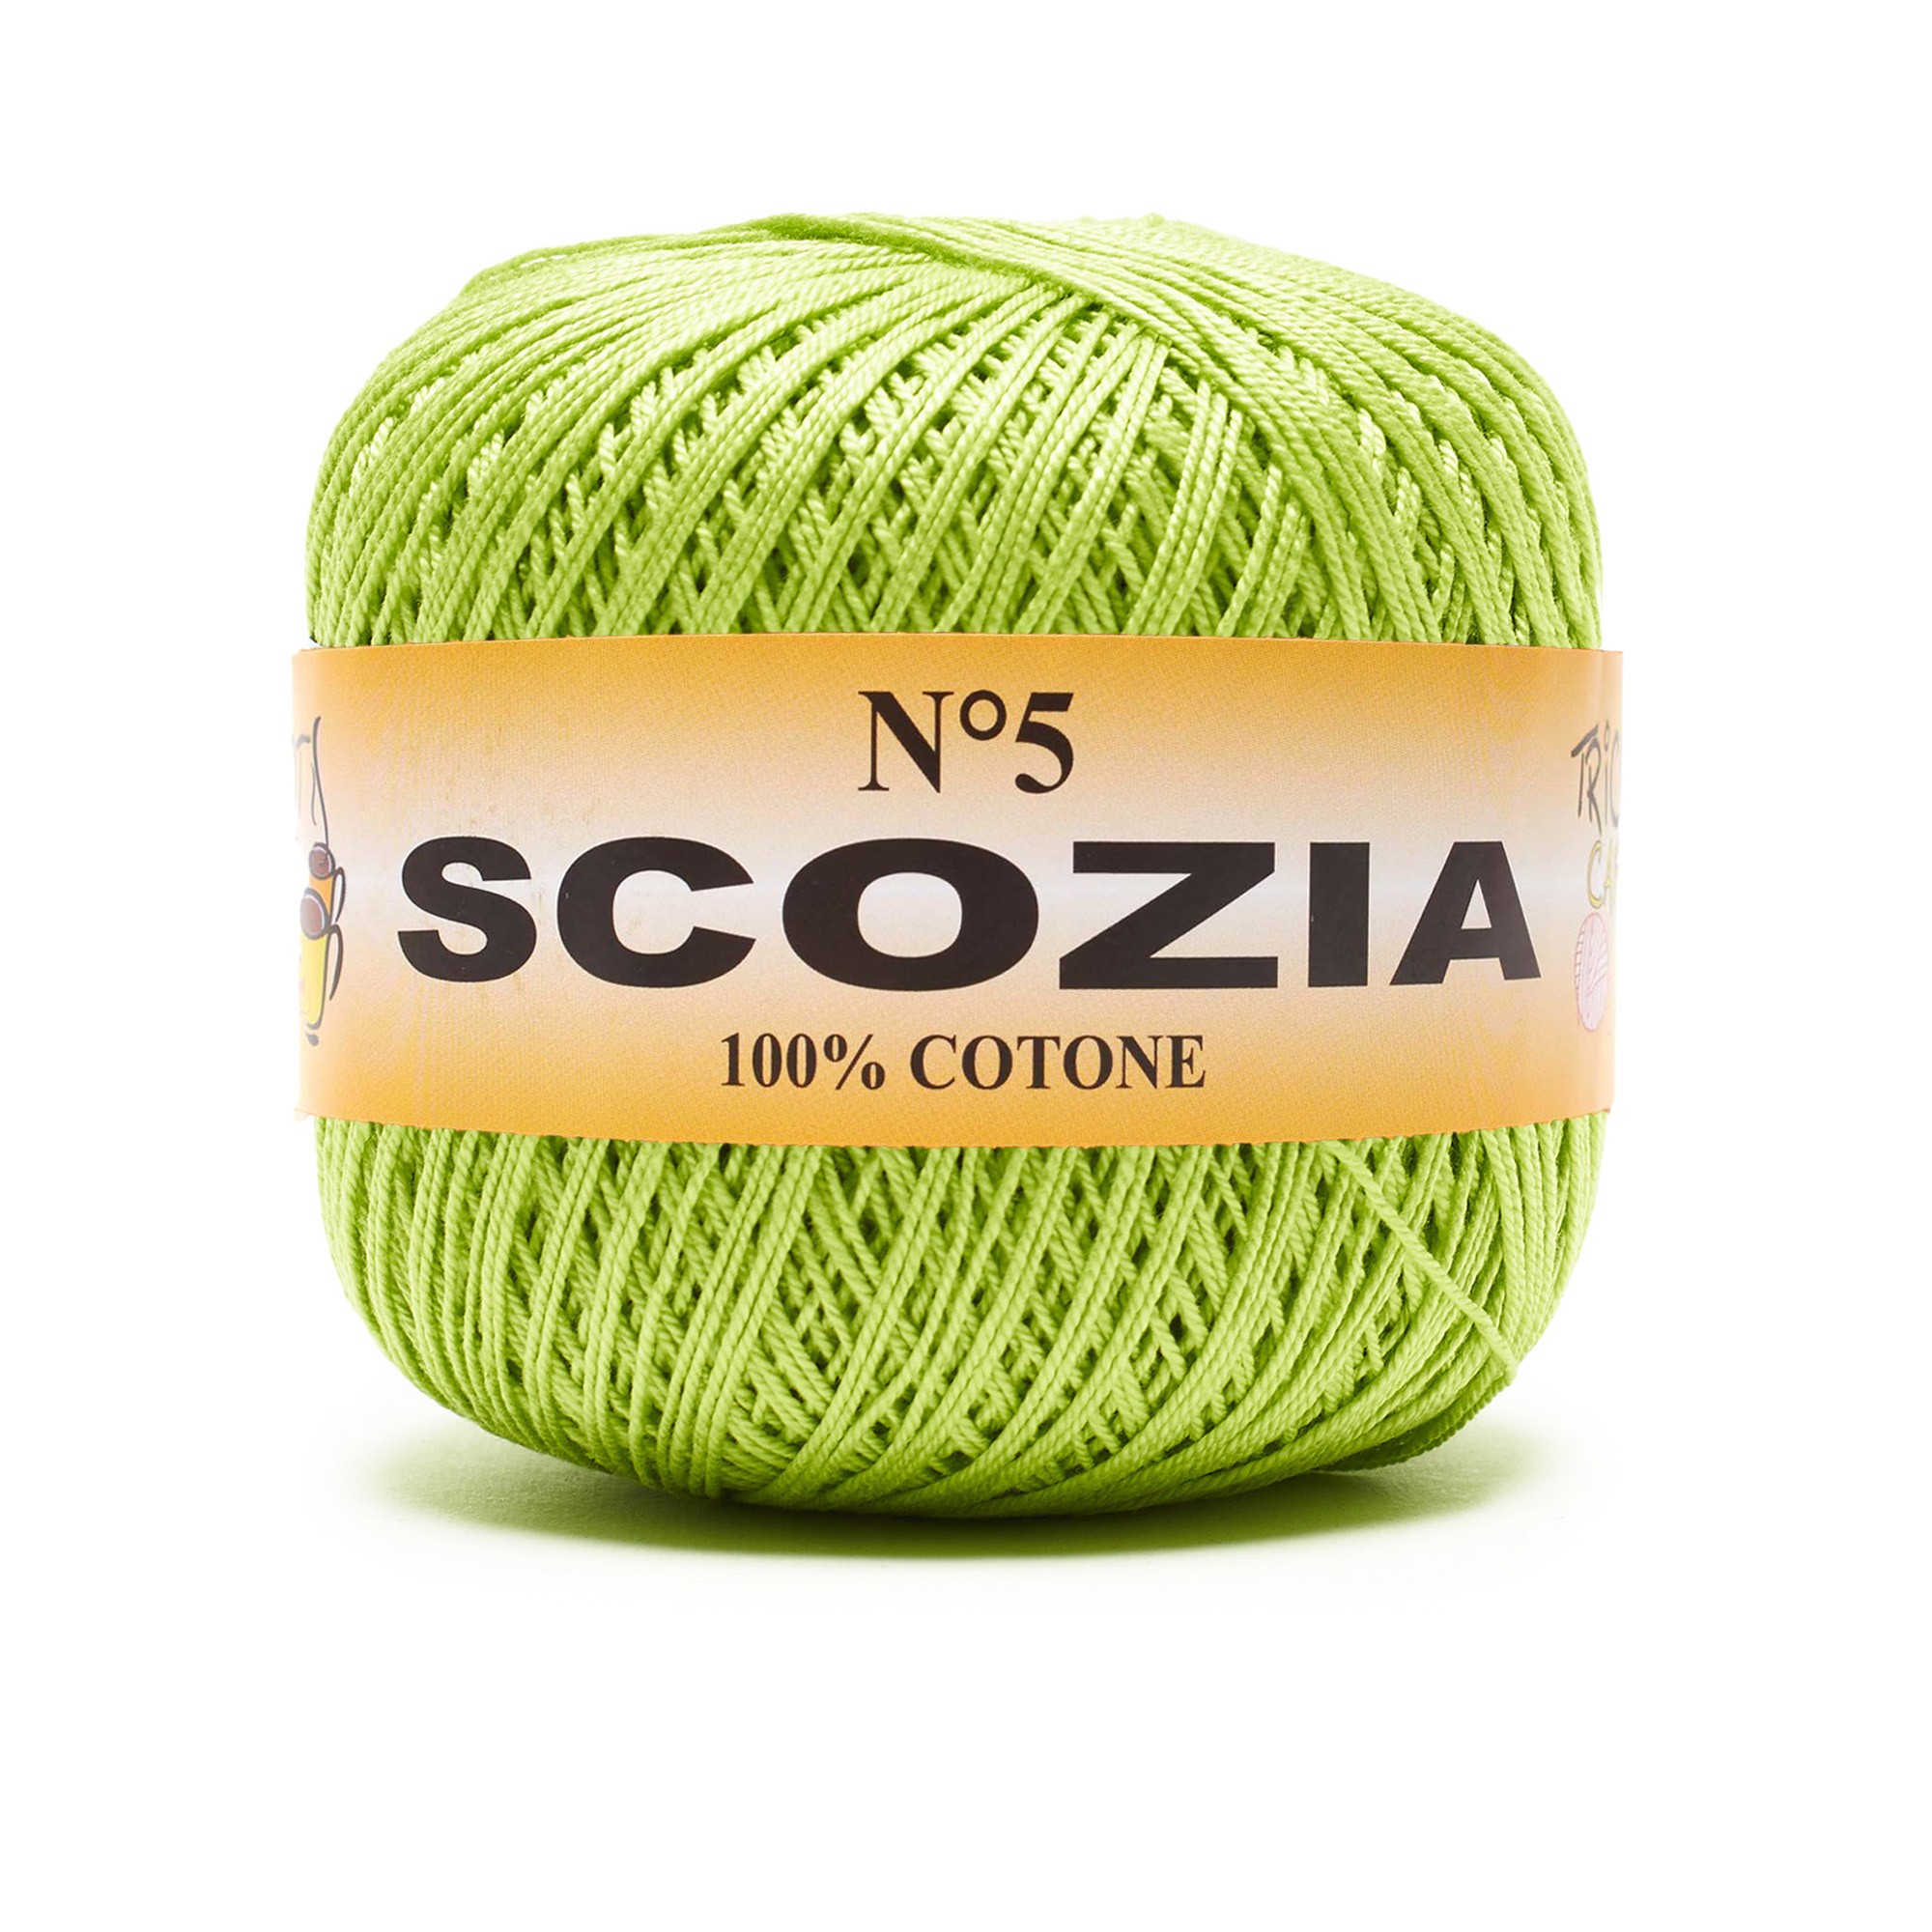 Scozia by Tricot Cafè - Filato Puro Cotone lucente filo di scozia ideale per uncinetto